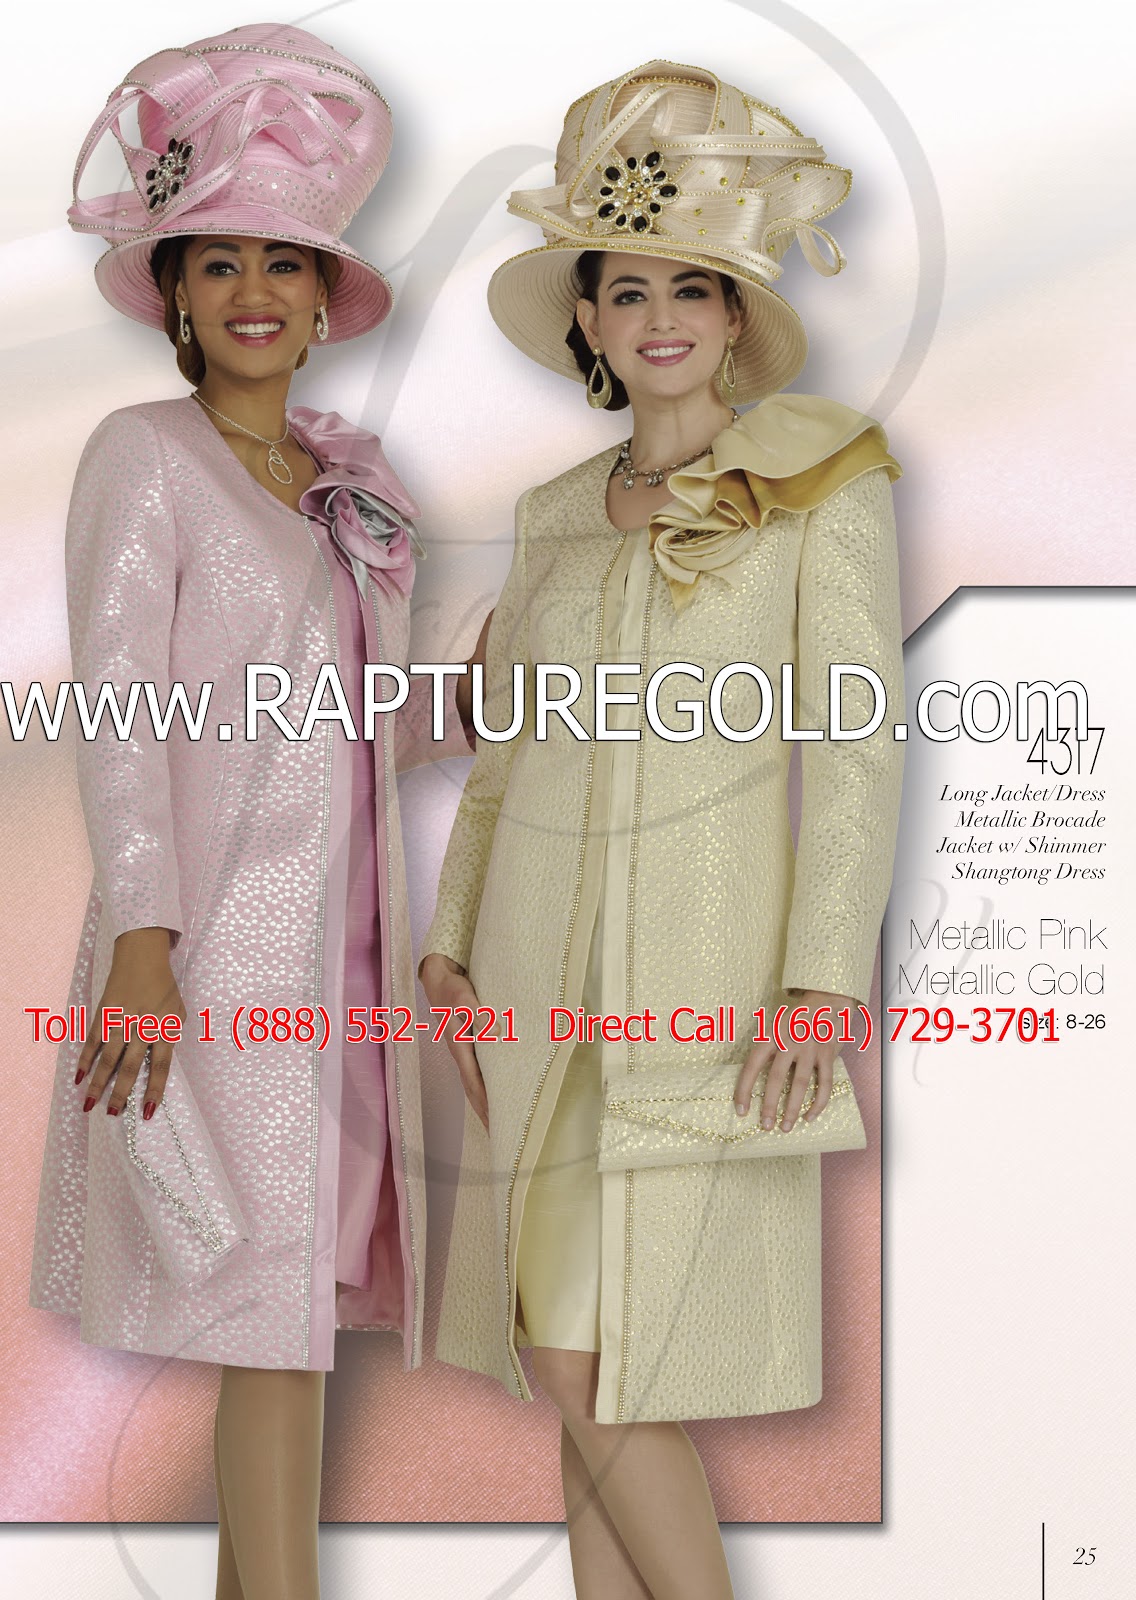 Donna Vinci Knits, (2020) Church Suits, Donna Vinci, Hats, GA, Texas, tx, LA, NY, CA ...1136 x 1600